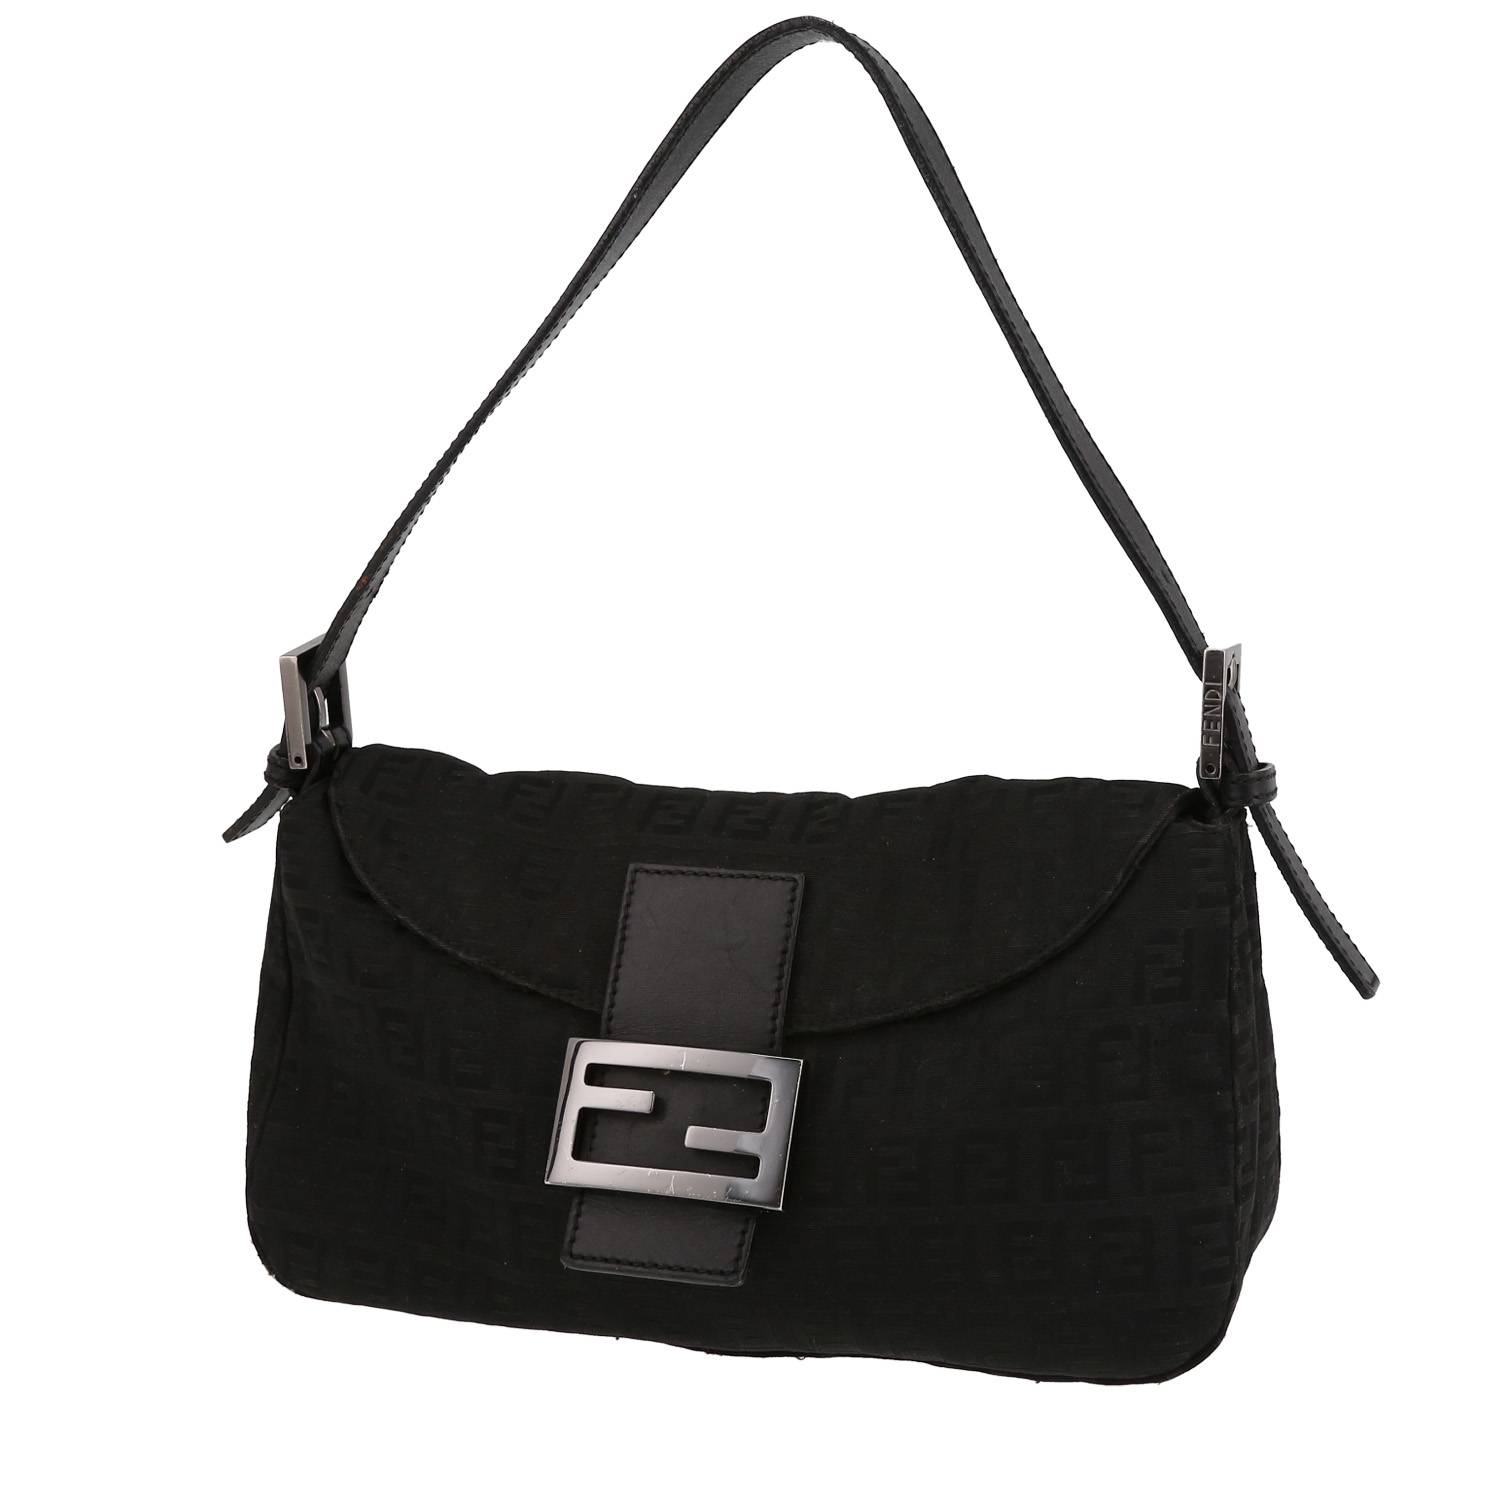 HealthdesignShops, Buckle for adjustable wear as a shoulder or belt bag